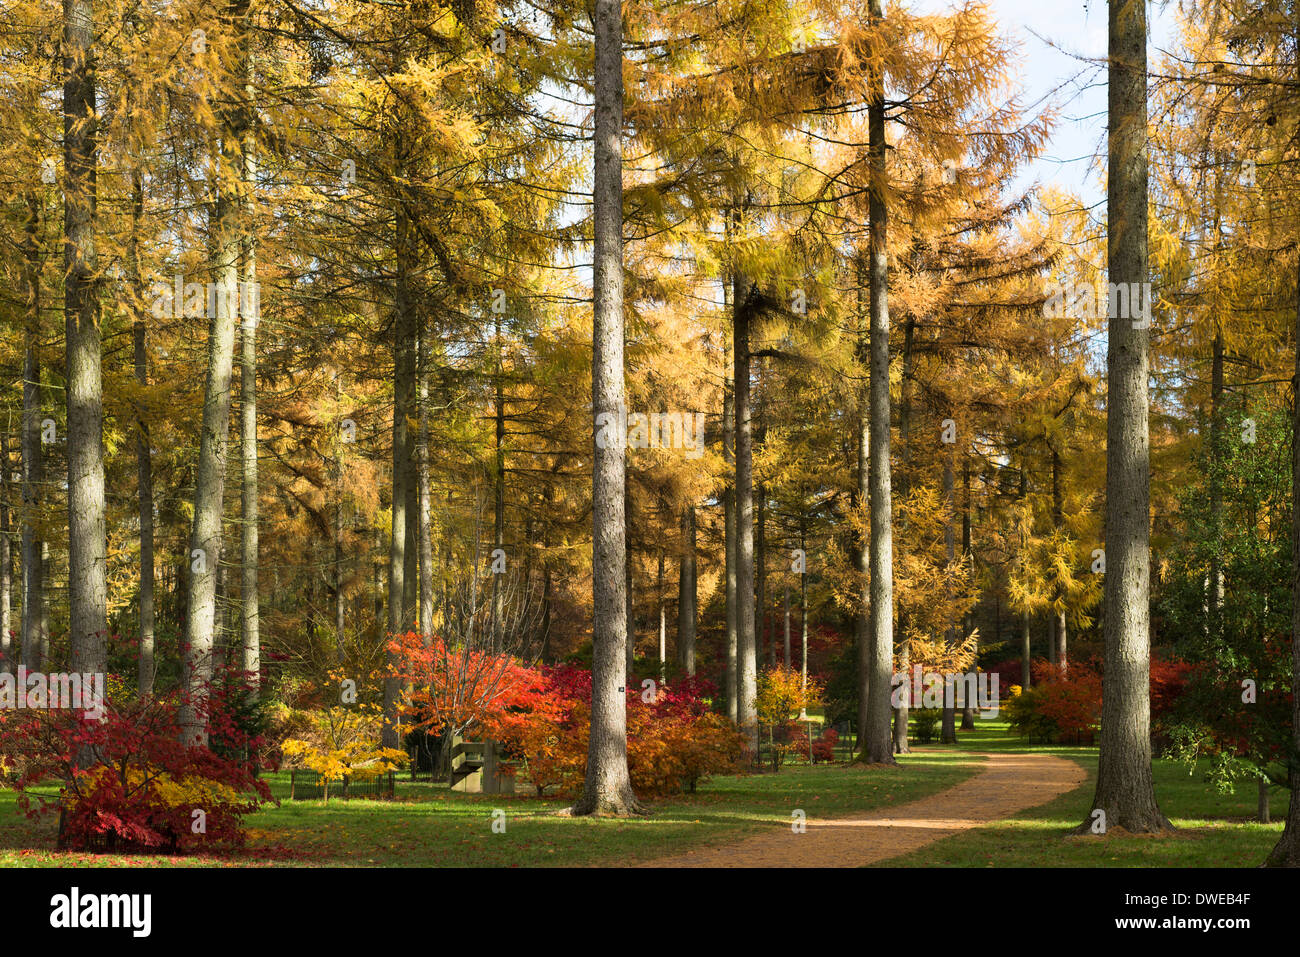 La boucle de l'érable et le mélèze arbres en automne, Westonbirt Arboretum, Gloucestershire, Angleterre, Royaume-Uni Banque D'Images